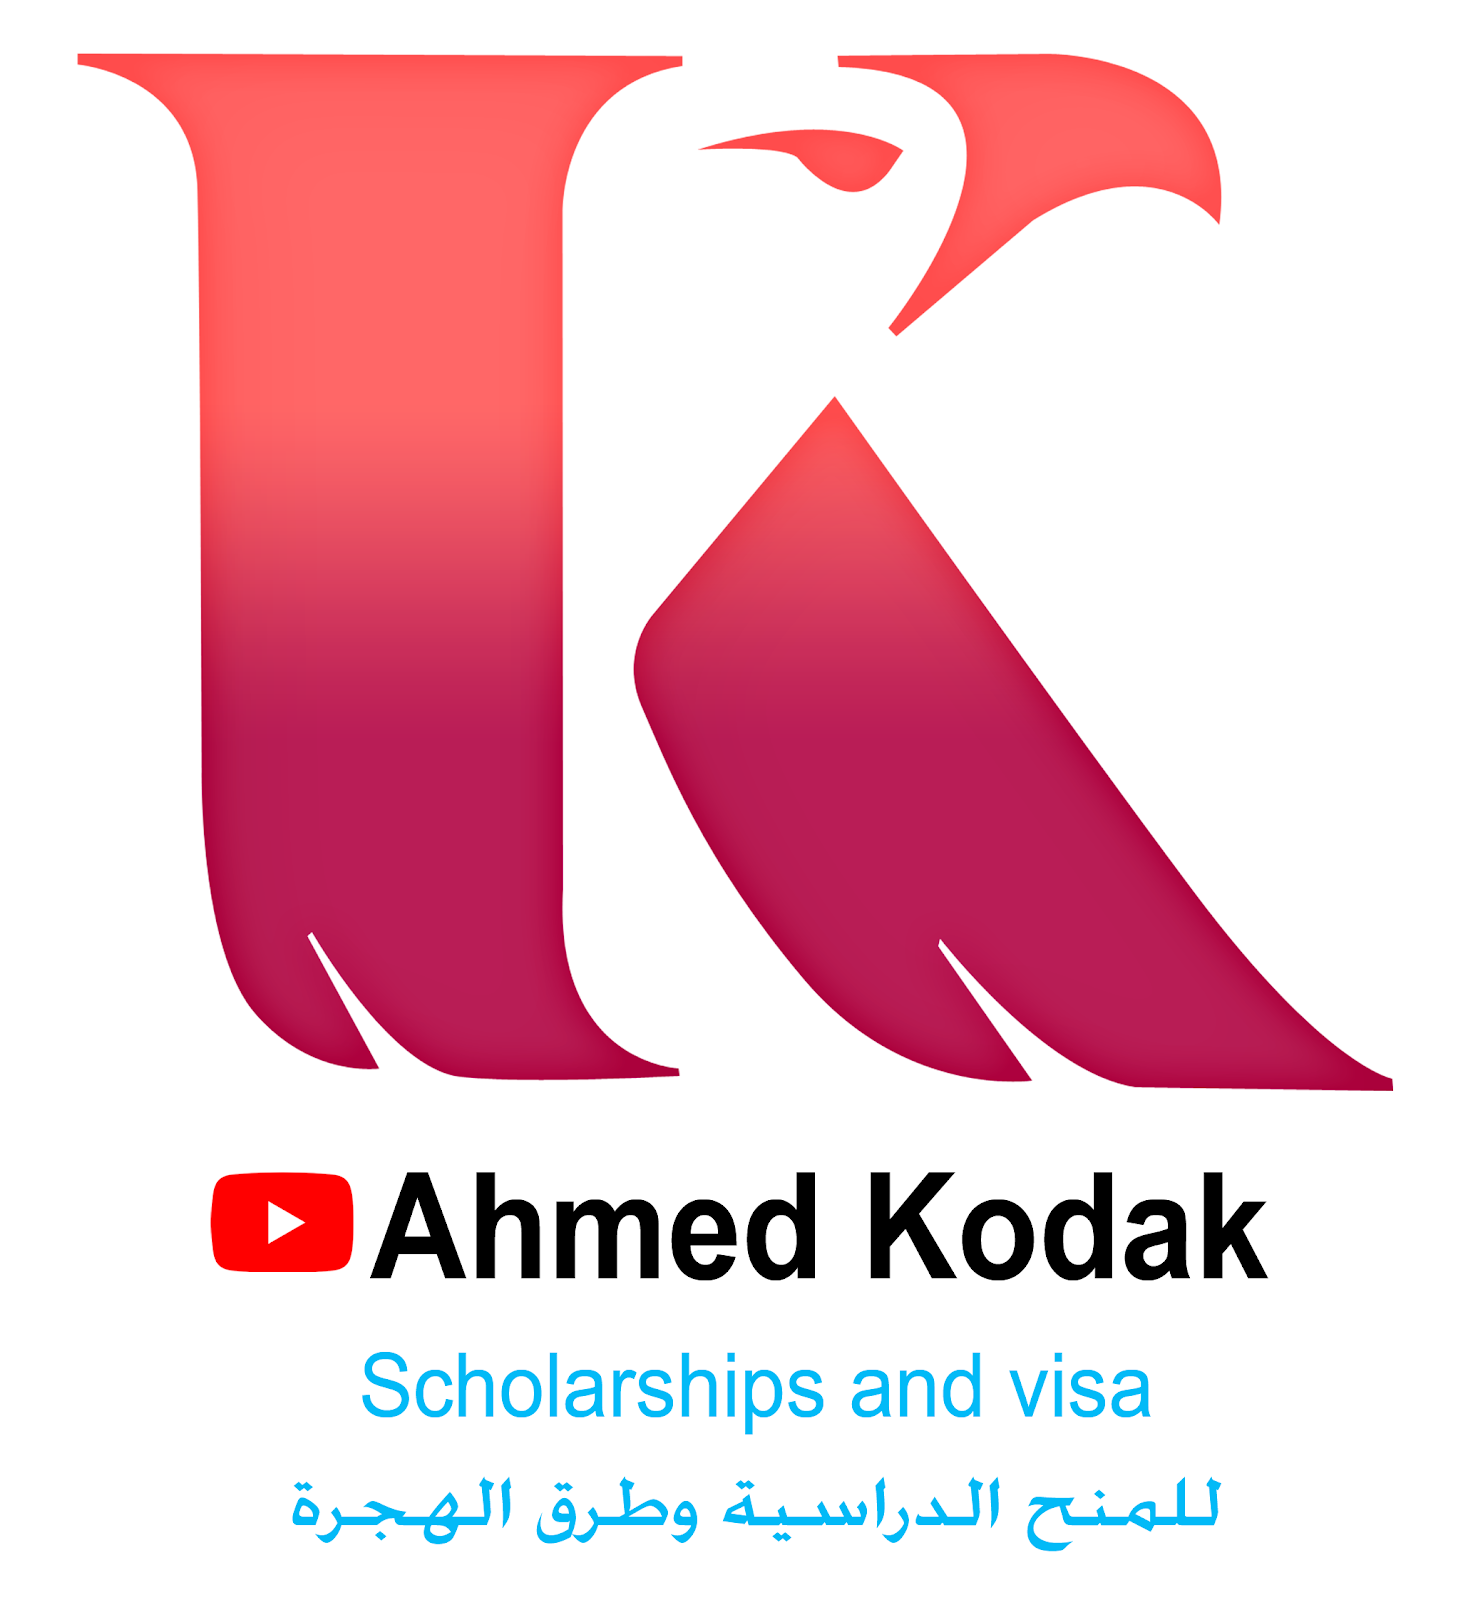 Ahmed Kodak 